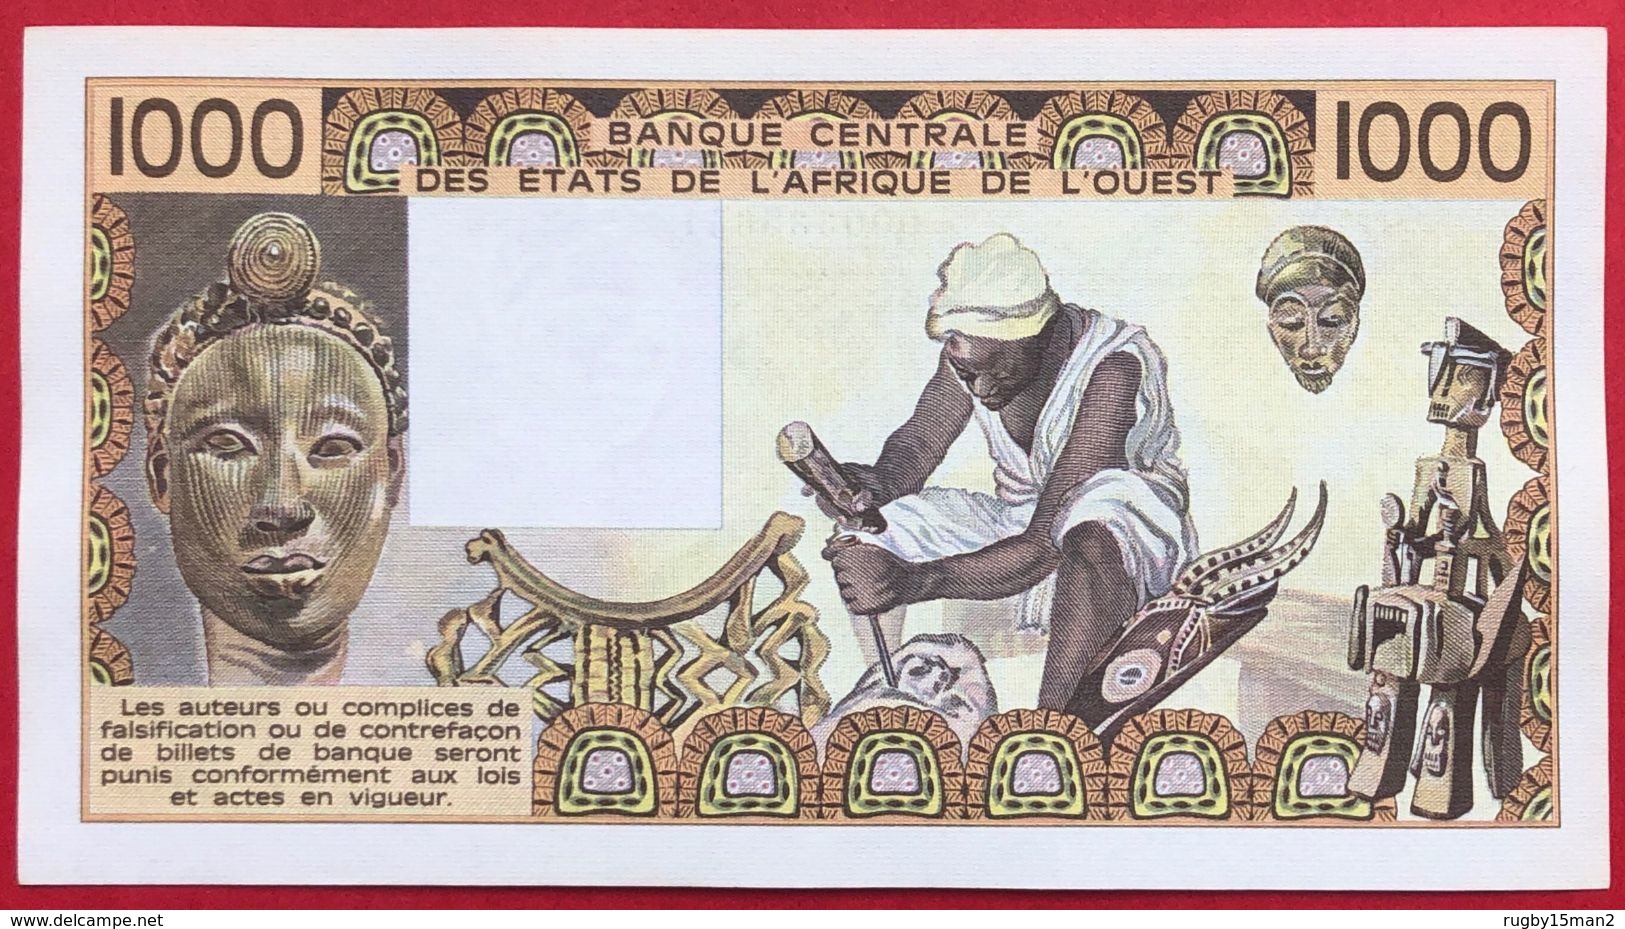 N°126 BILLET DE BANQUE 1000 FRANCS COTE D'IVOIRE 1981 - Côte D'Ivoire